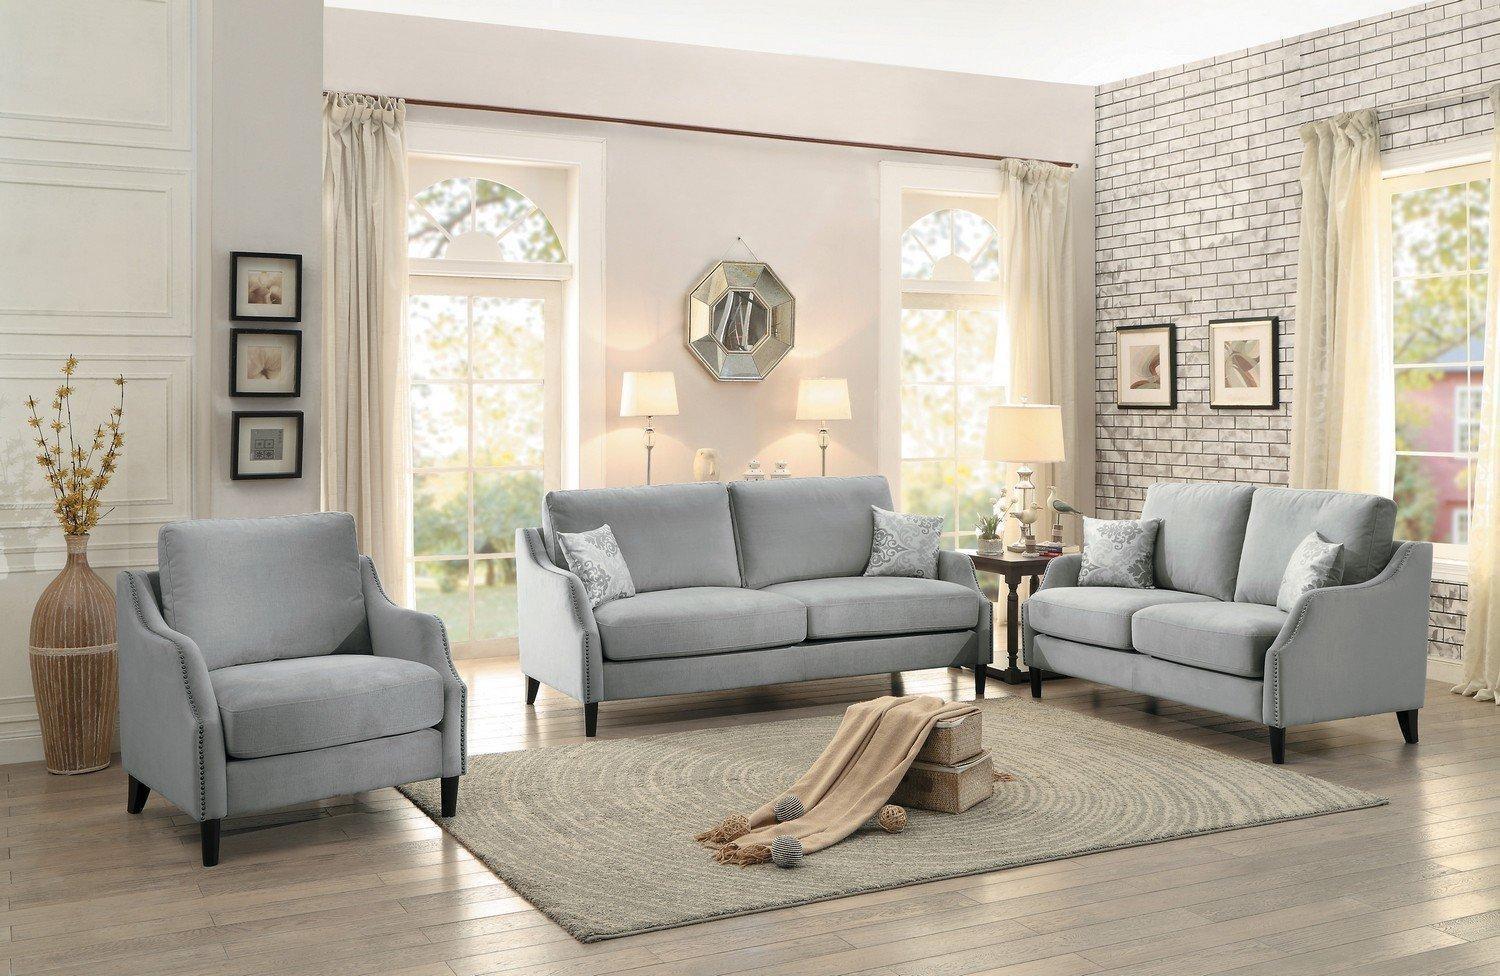 

    
Homelegance 8479 Banburry Grey Fabric Sofa Set 3Pcs Contemporary Traditional
